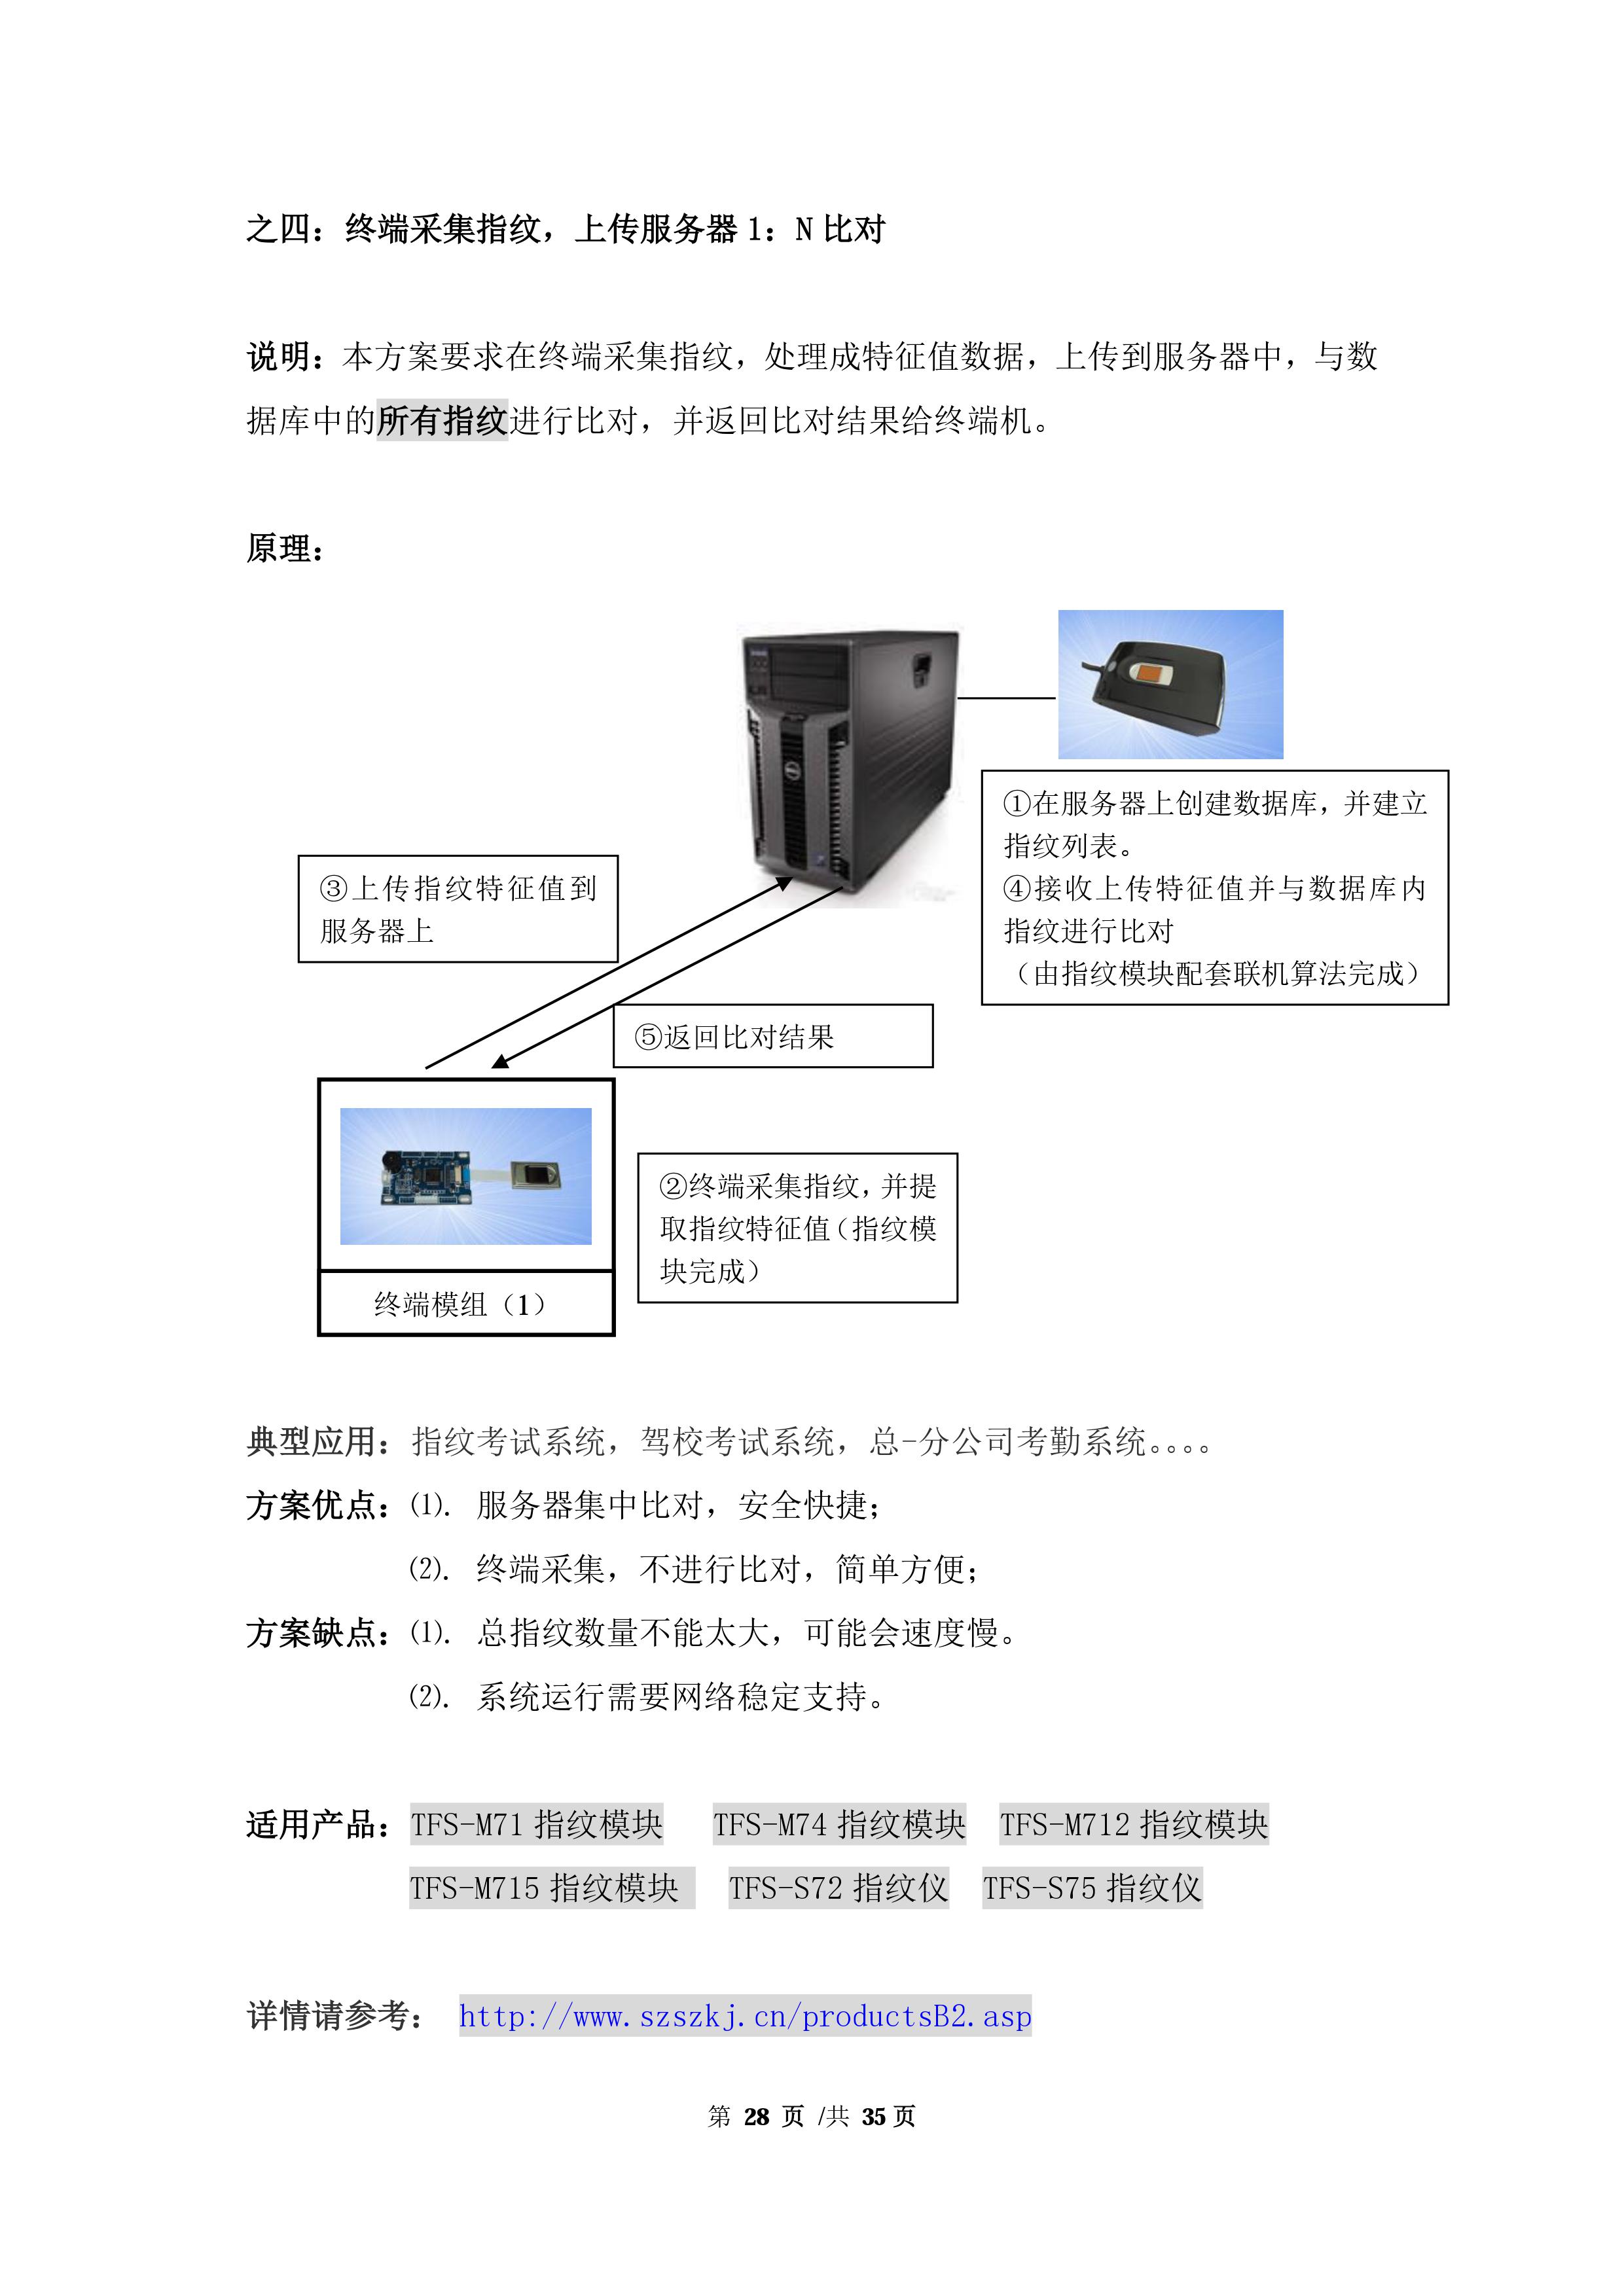 二次开发指纹芯片生产厂家_指纹锁开发指纹锁集成应用-深圳市十指科技有限公司